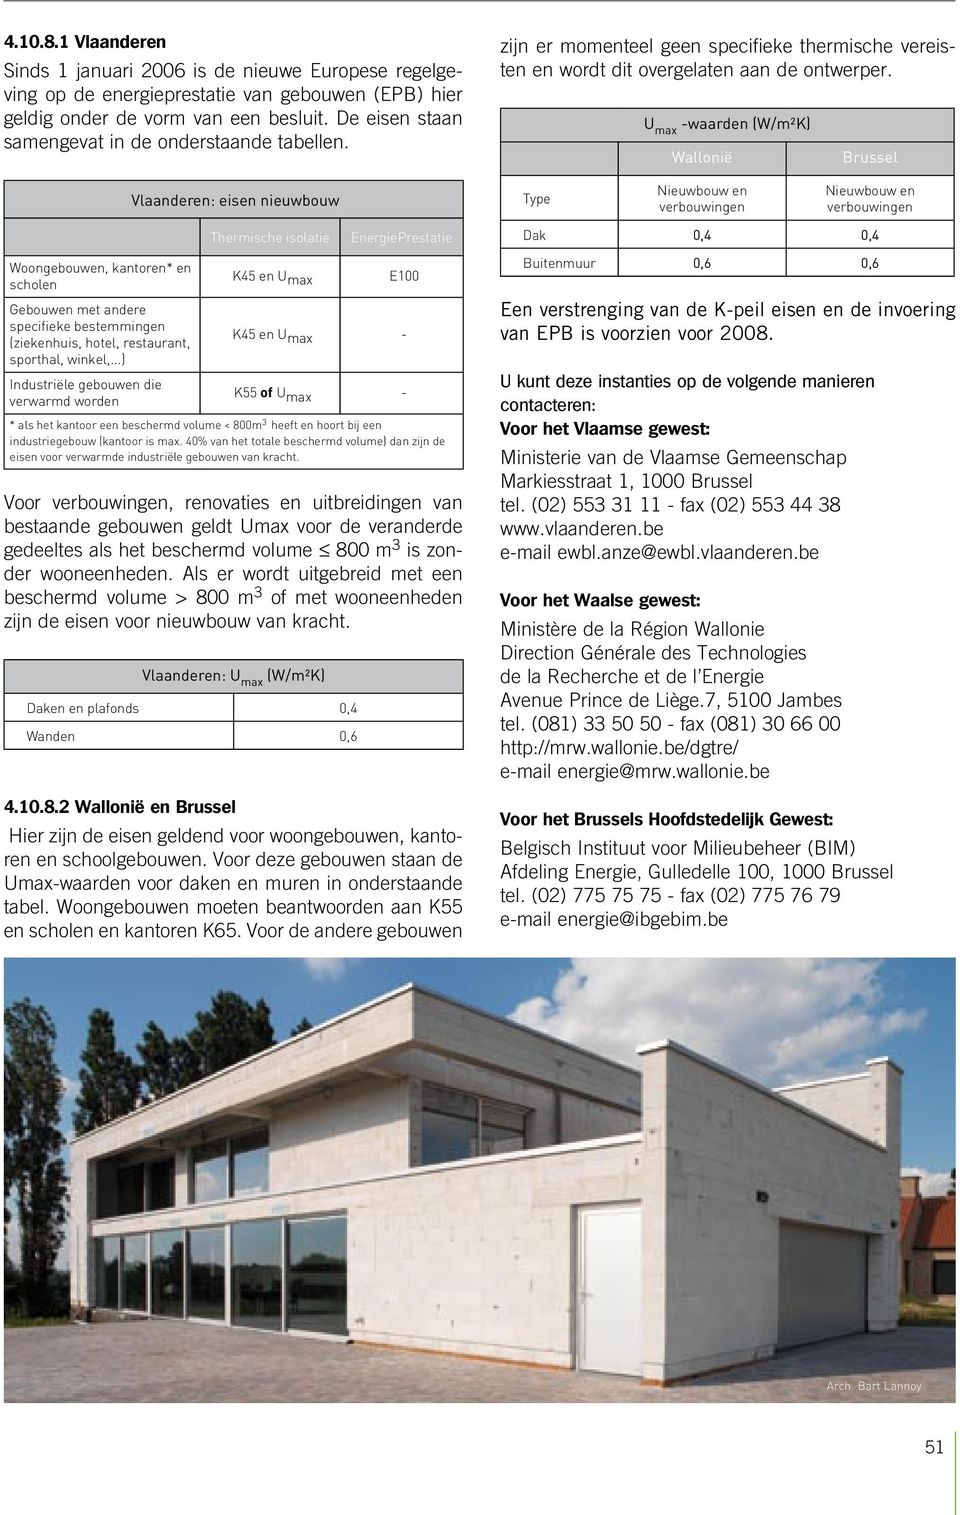 U max -waarden (W/m²K) Wallonië Brussel Vlaanderen eisen nieuwbouw Type Nieuwbouw en verbouwingen Nieuwbouw en verbouwingen Woongebouwen, kantoren* en scholen Gebouwen met andere specifieke